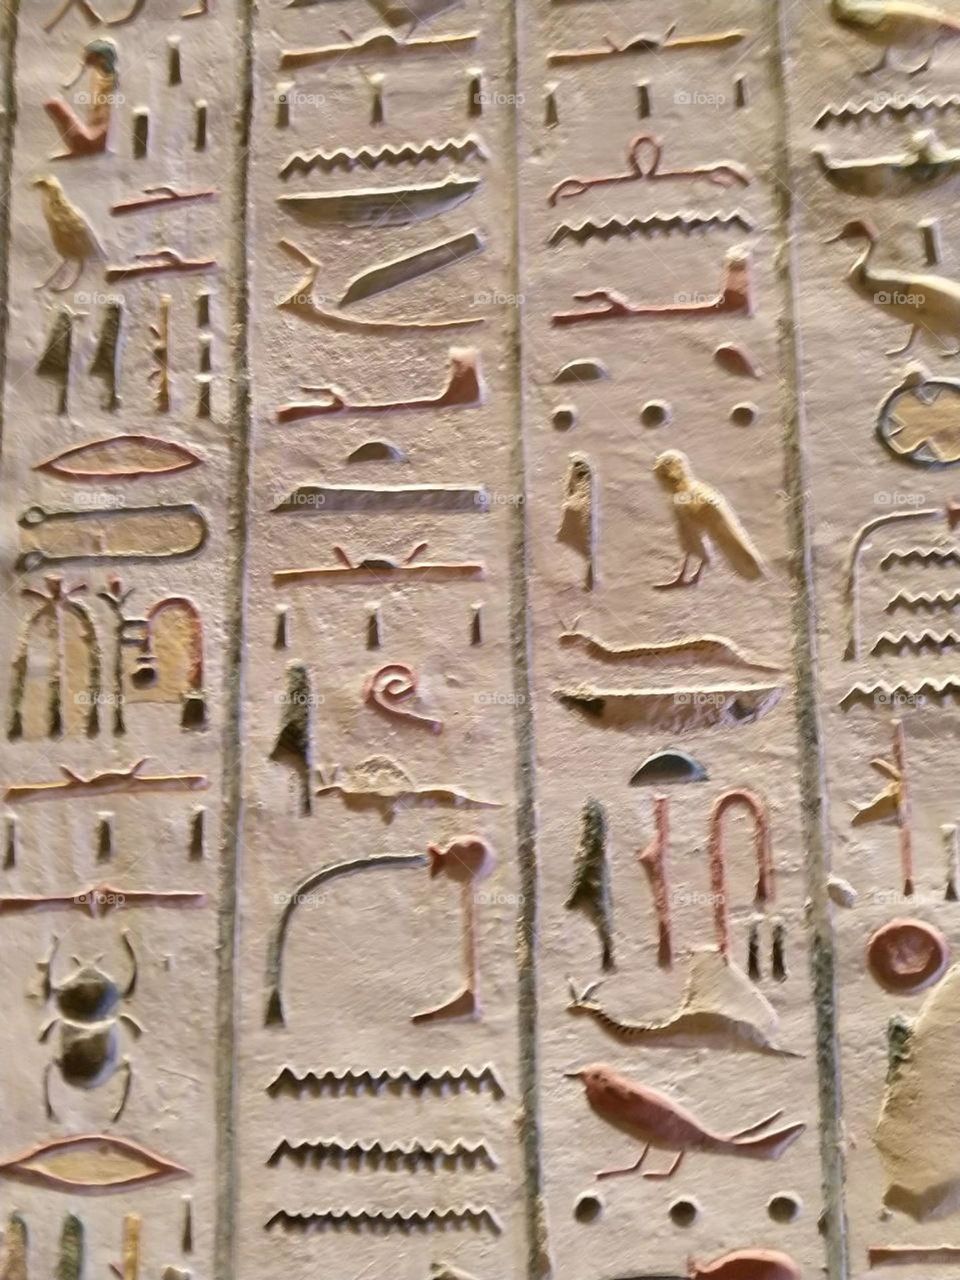 hieroglyphs ❤